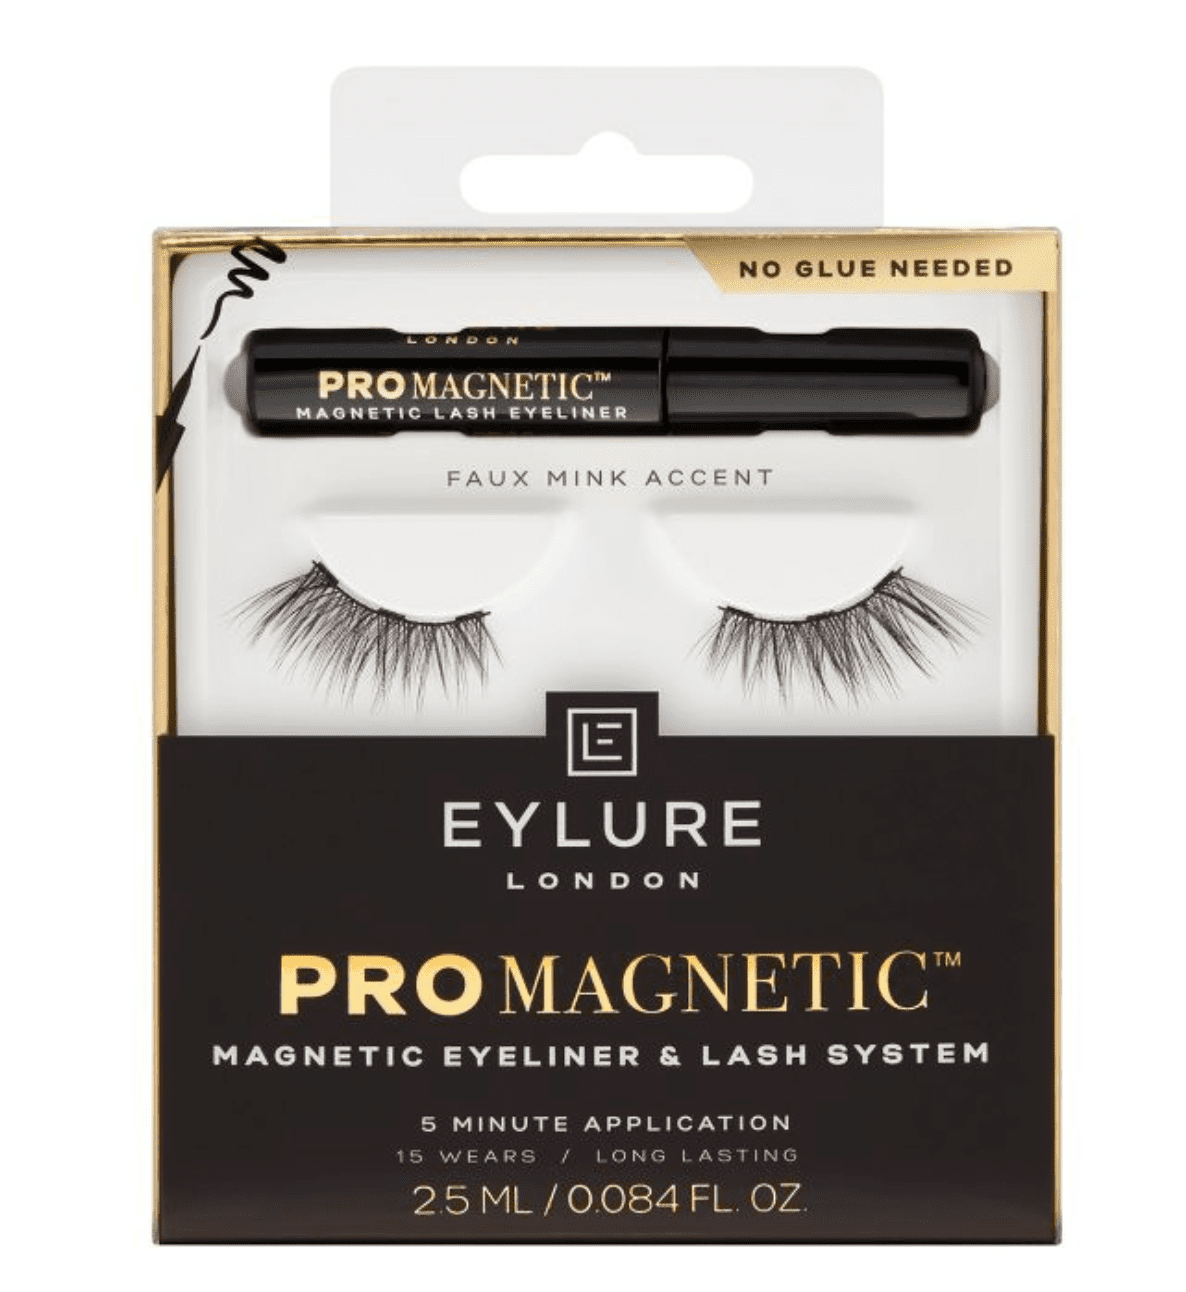 Eylure ProMagnetic Faux Mink Accent False Eyelashes